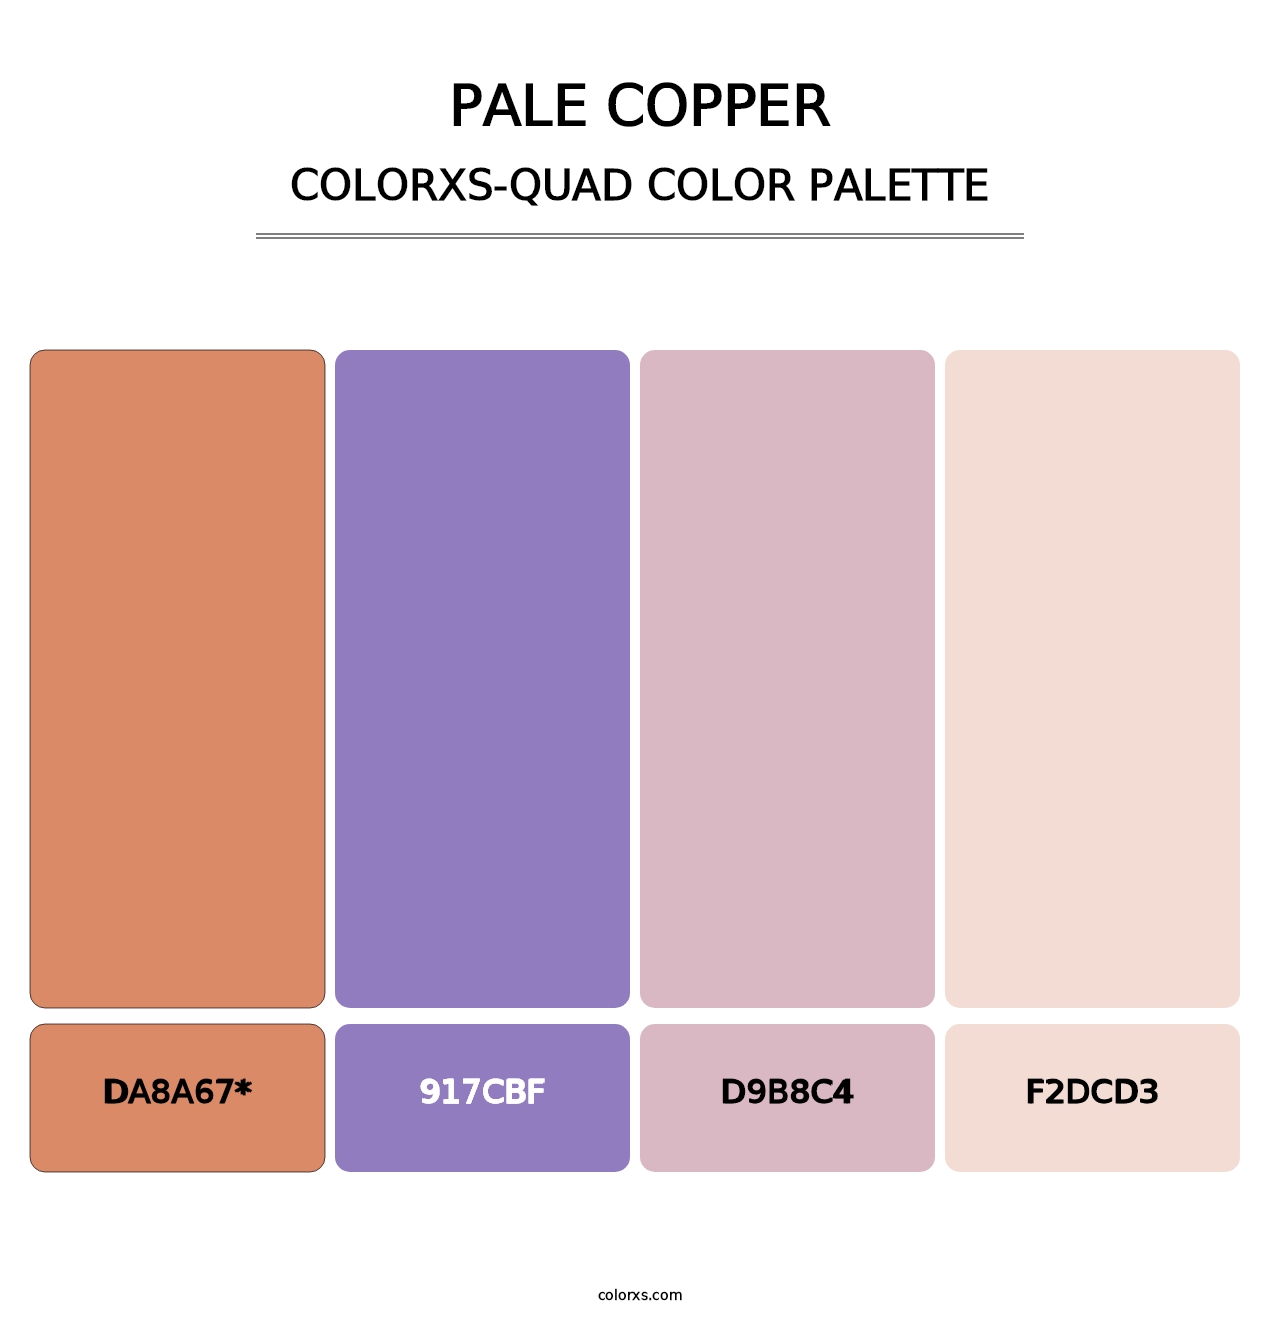 Pale Copper - Colorxs Quad Palette